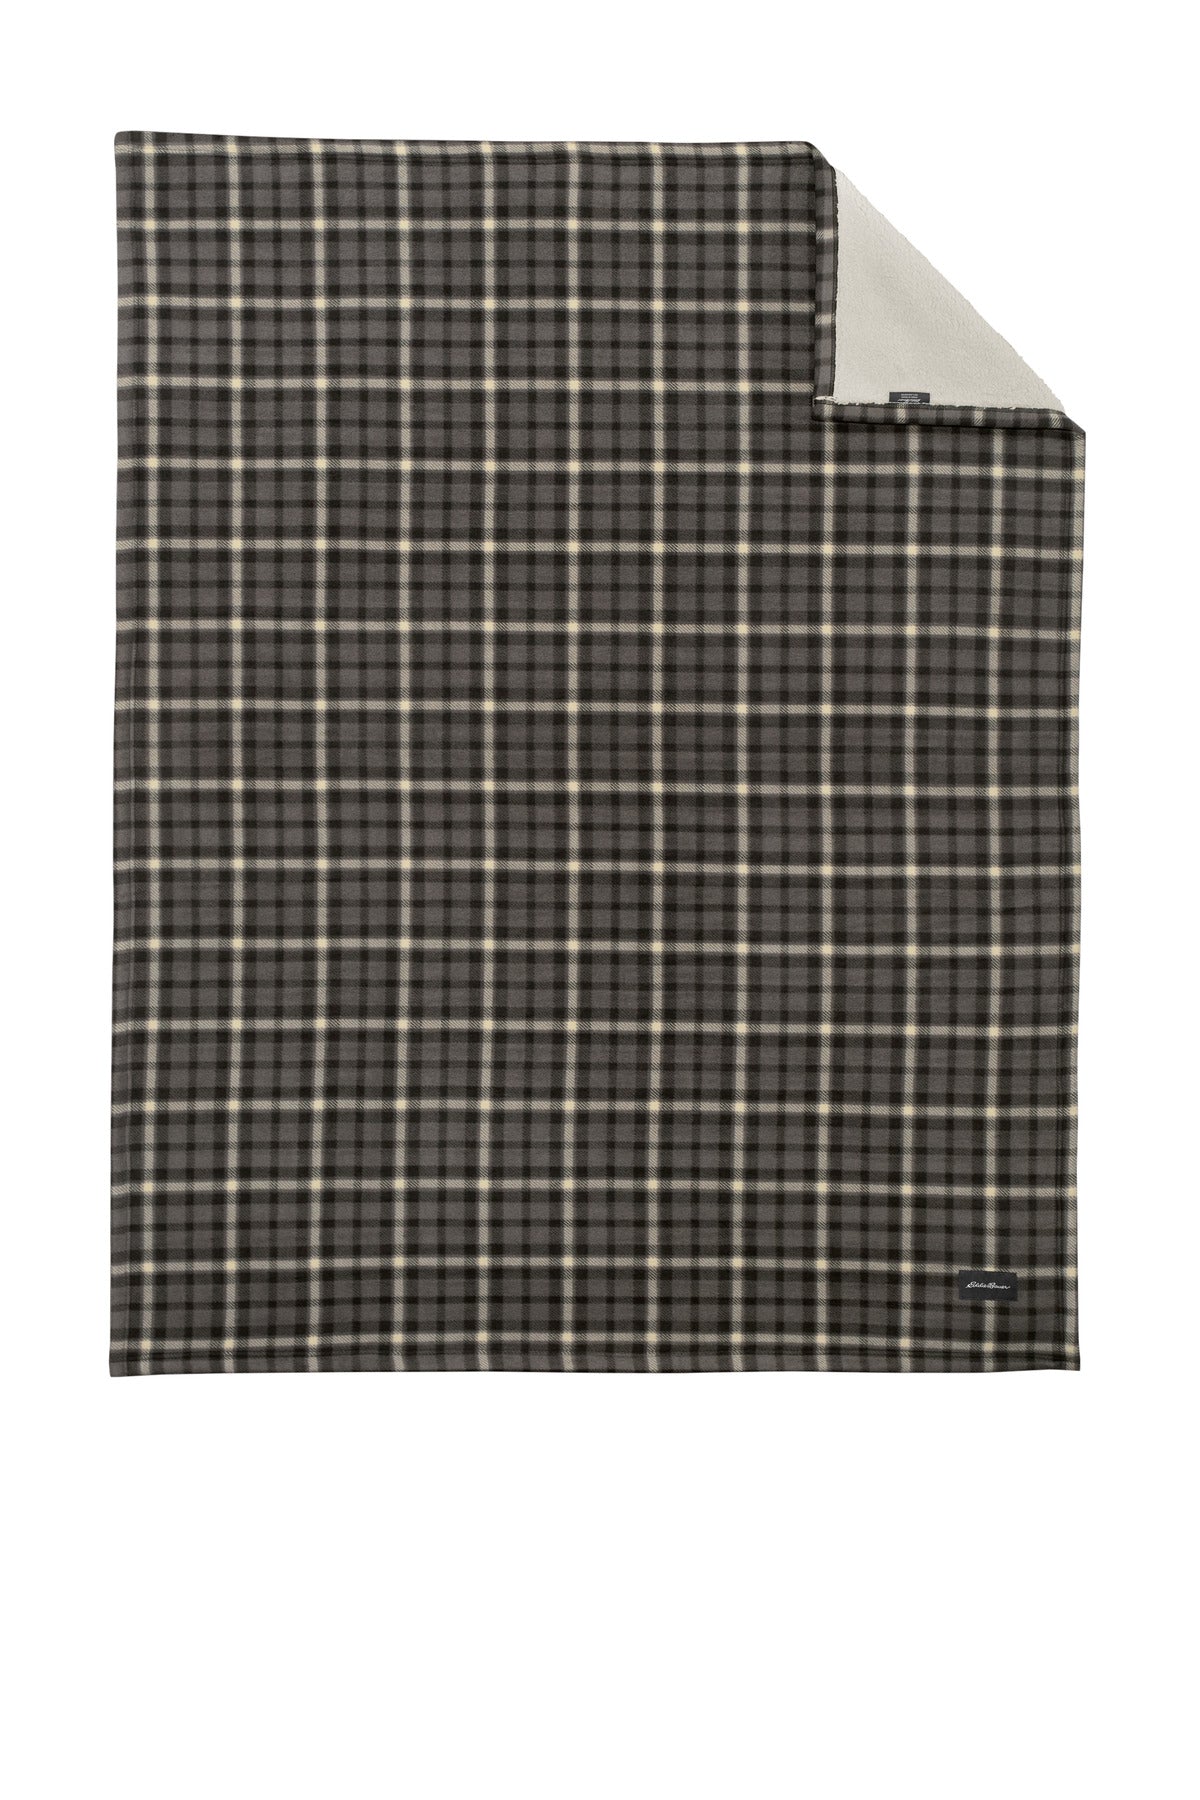 Eddie Bauer® Woodland Blanket EB750 - DFW Impression